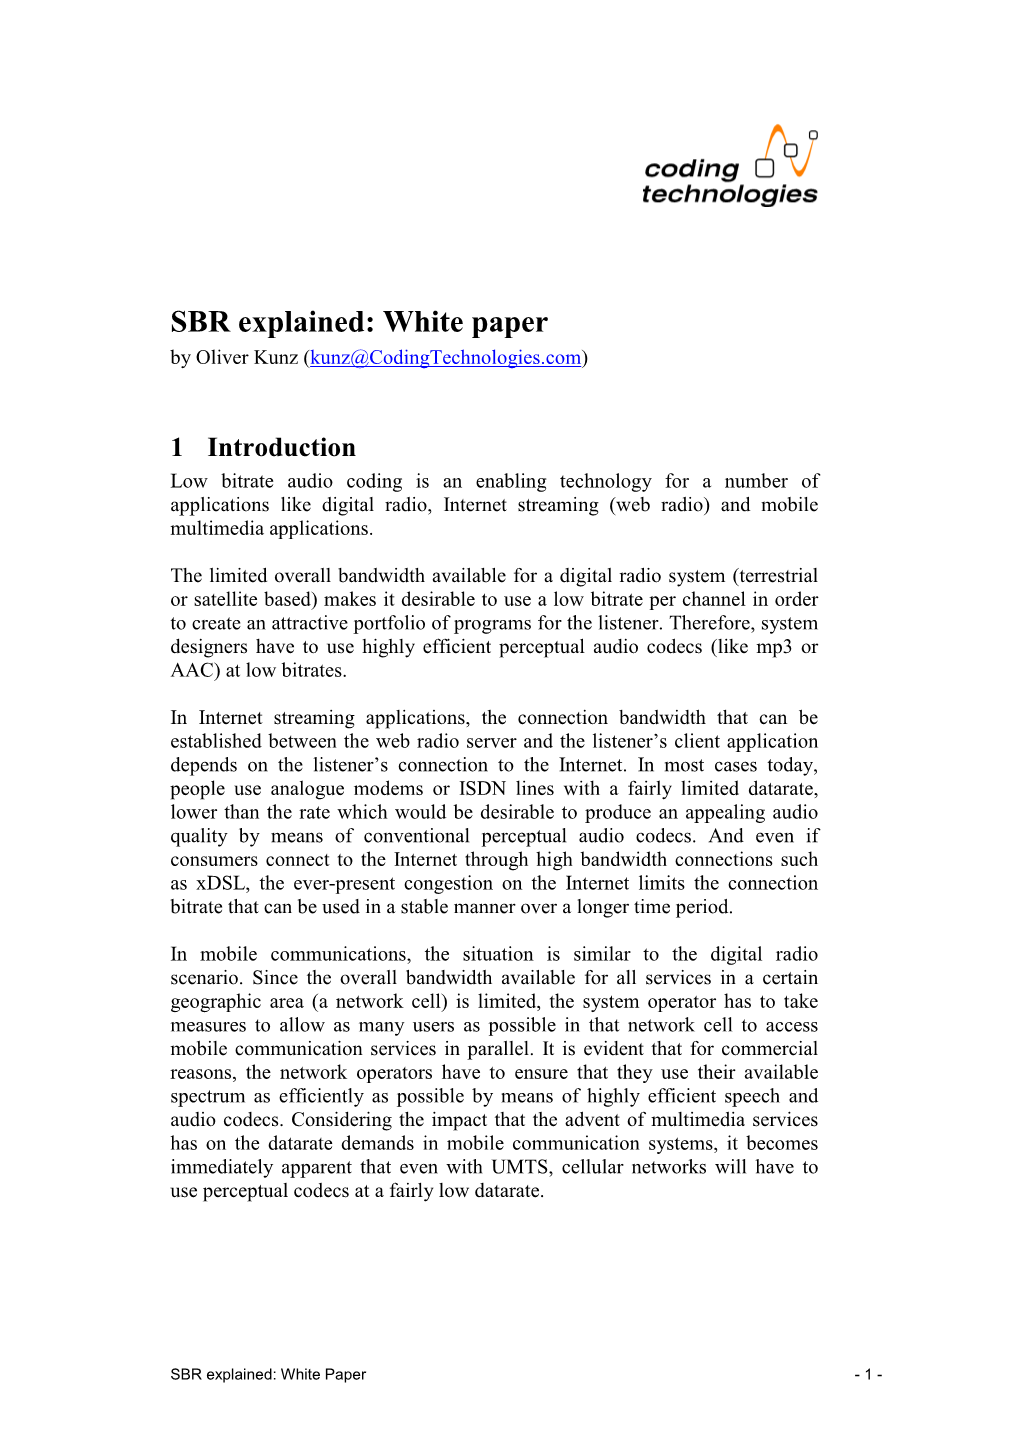 SBR White Paper V1